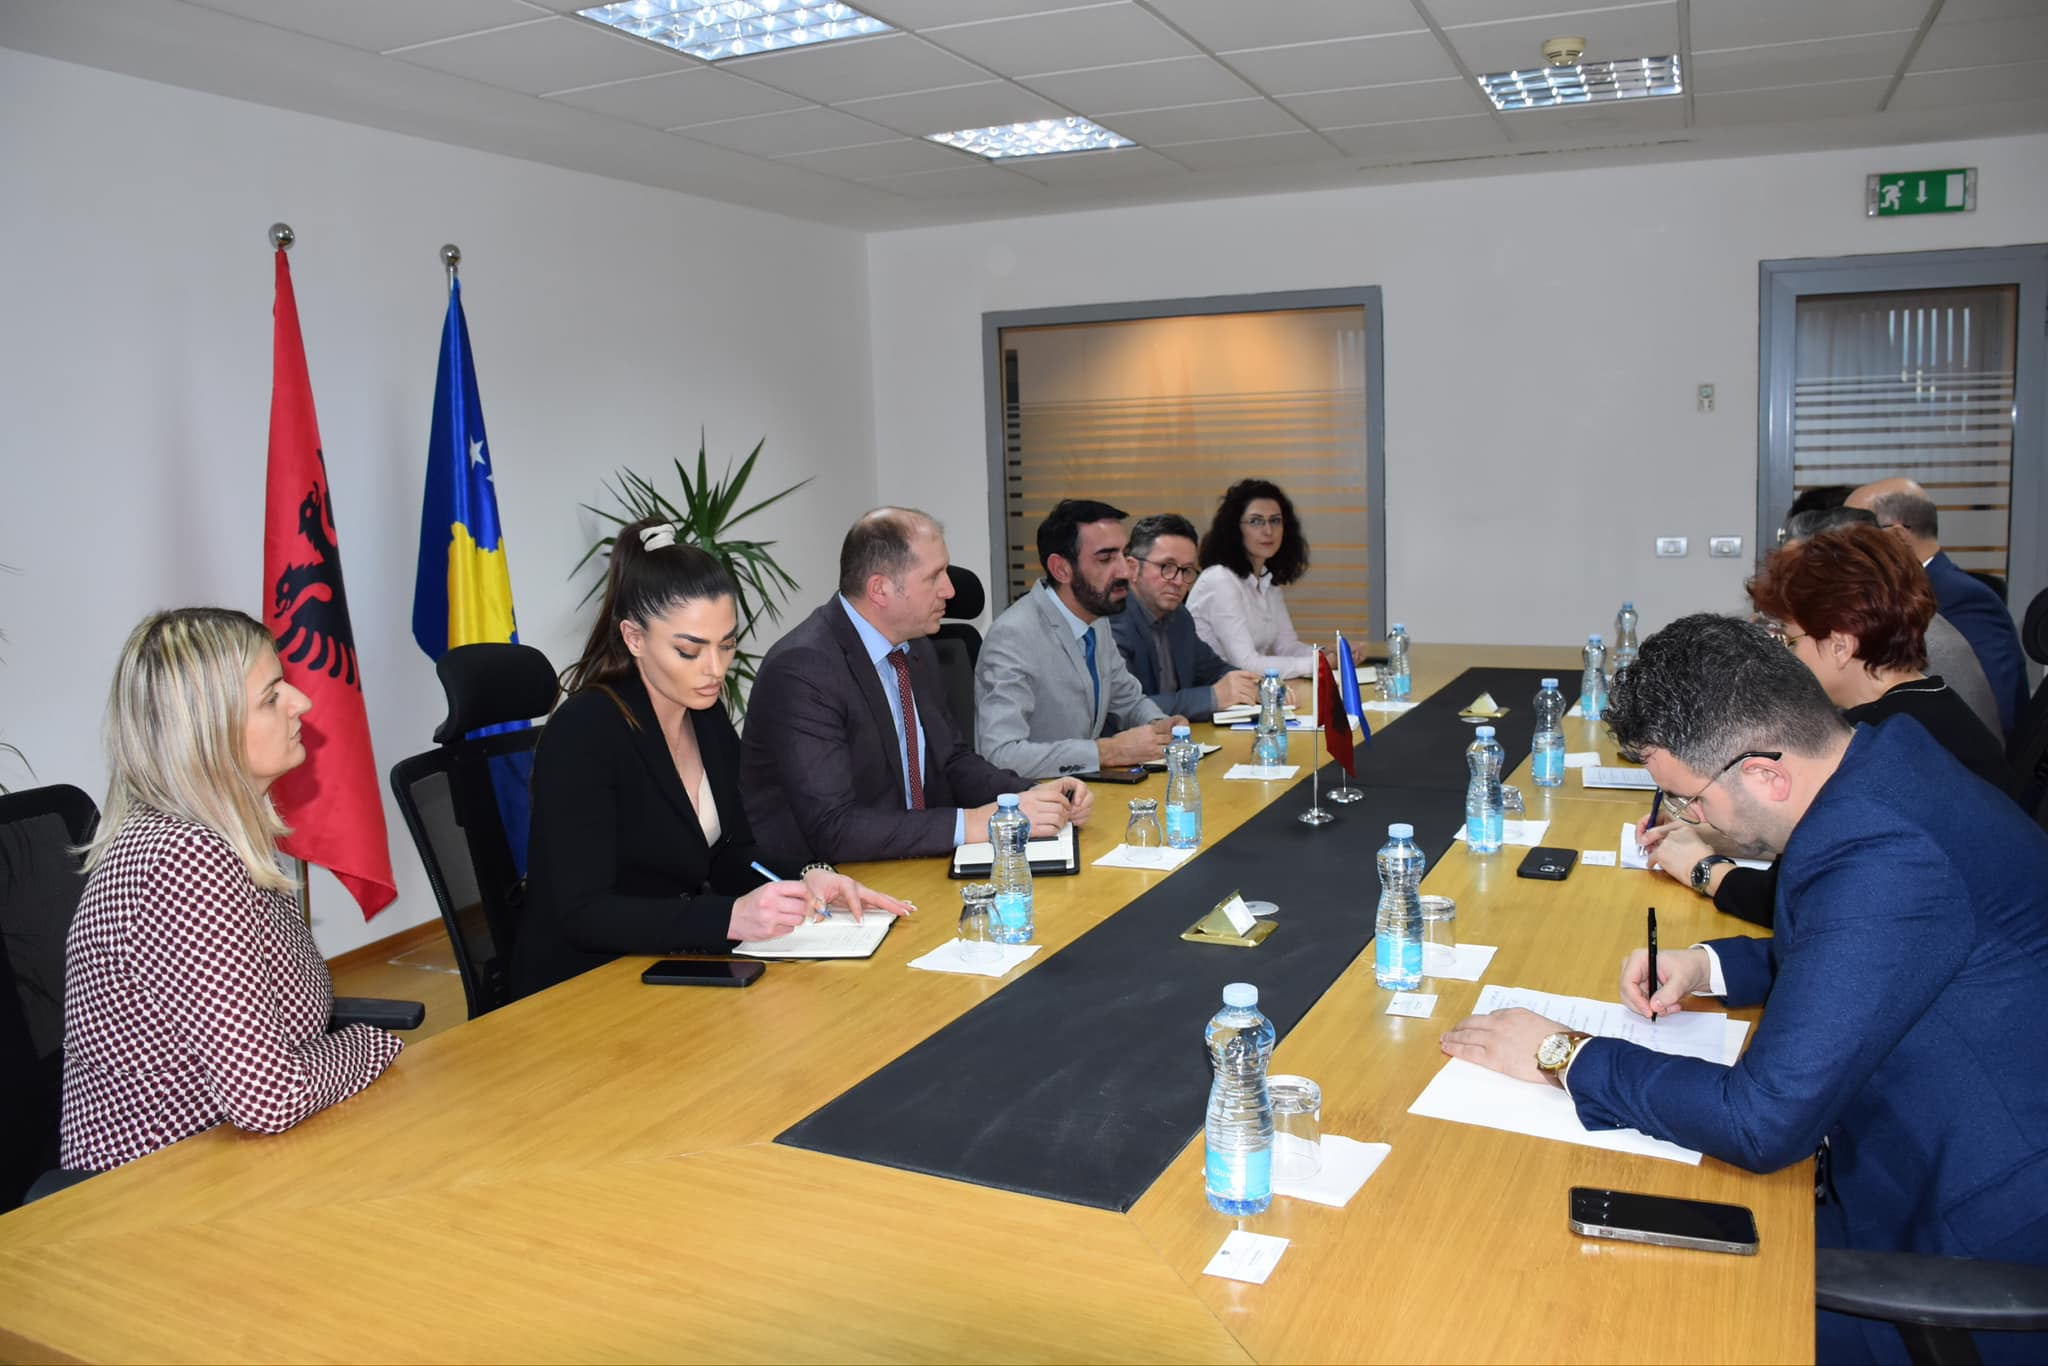 Zamenik ministra regionalnog razvoja, g. Ali Tafarshiku, ugostio je zamenika ministra inostranih poslova Albanije, g. Besart Kadia.